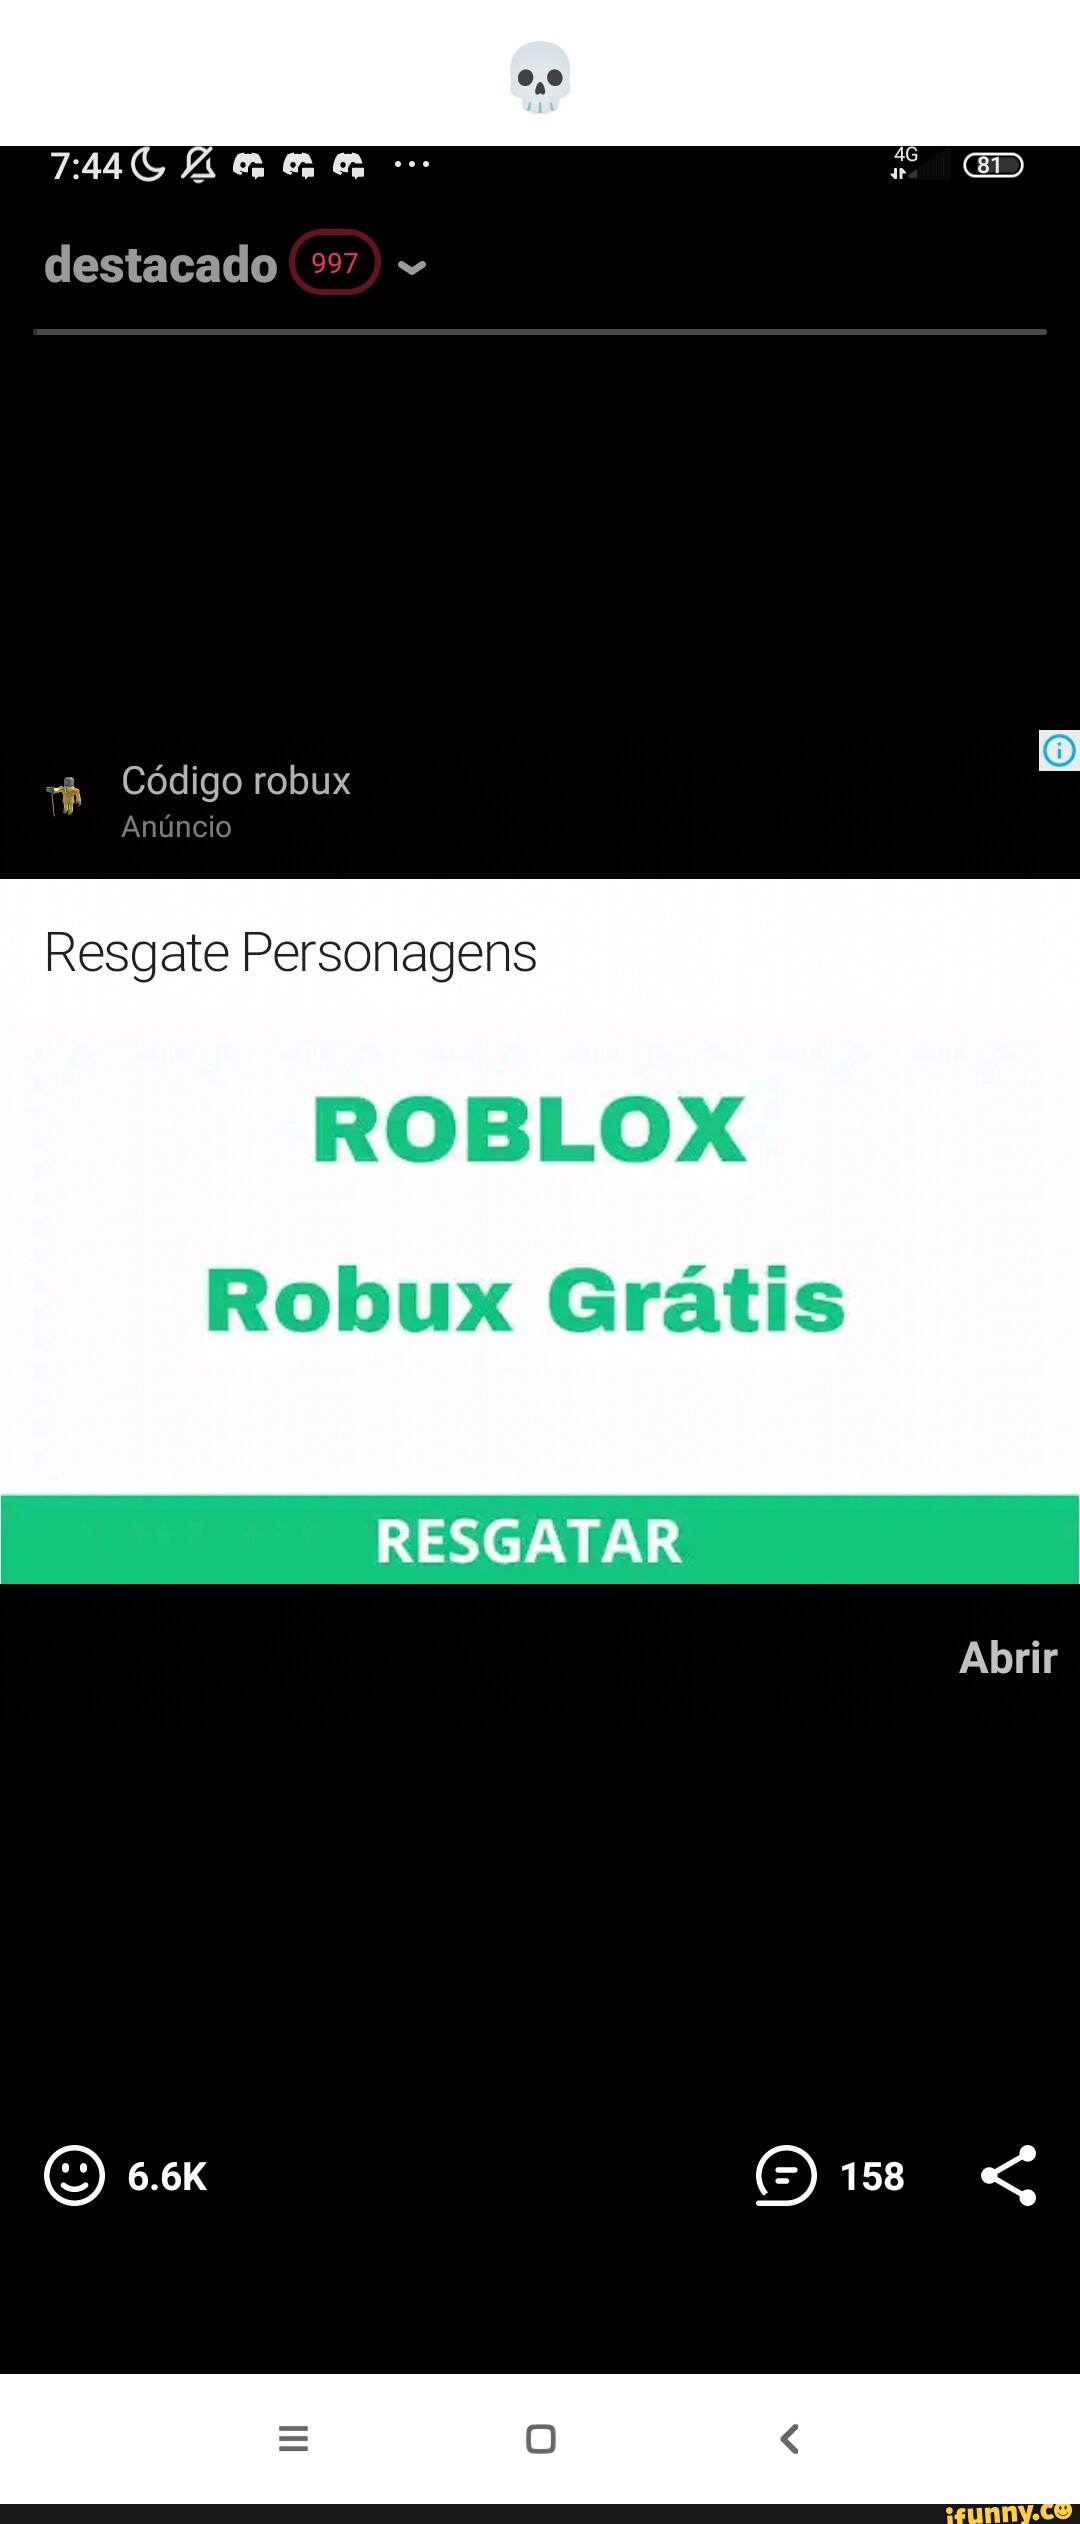 Personagem roblox com robux